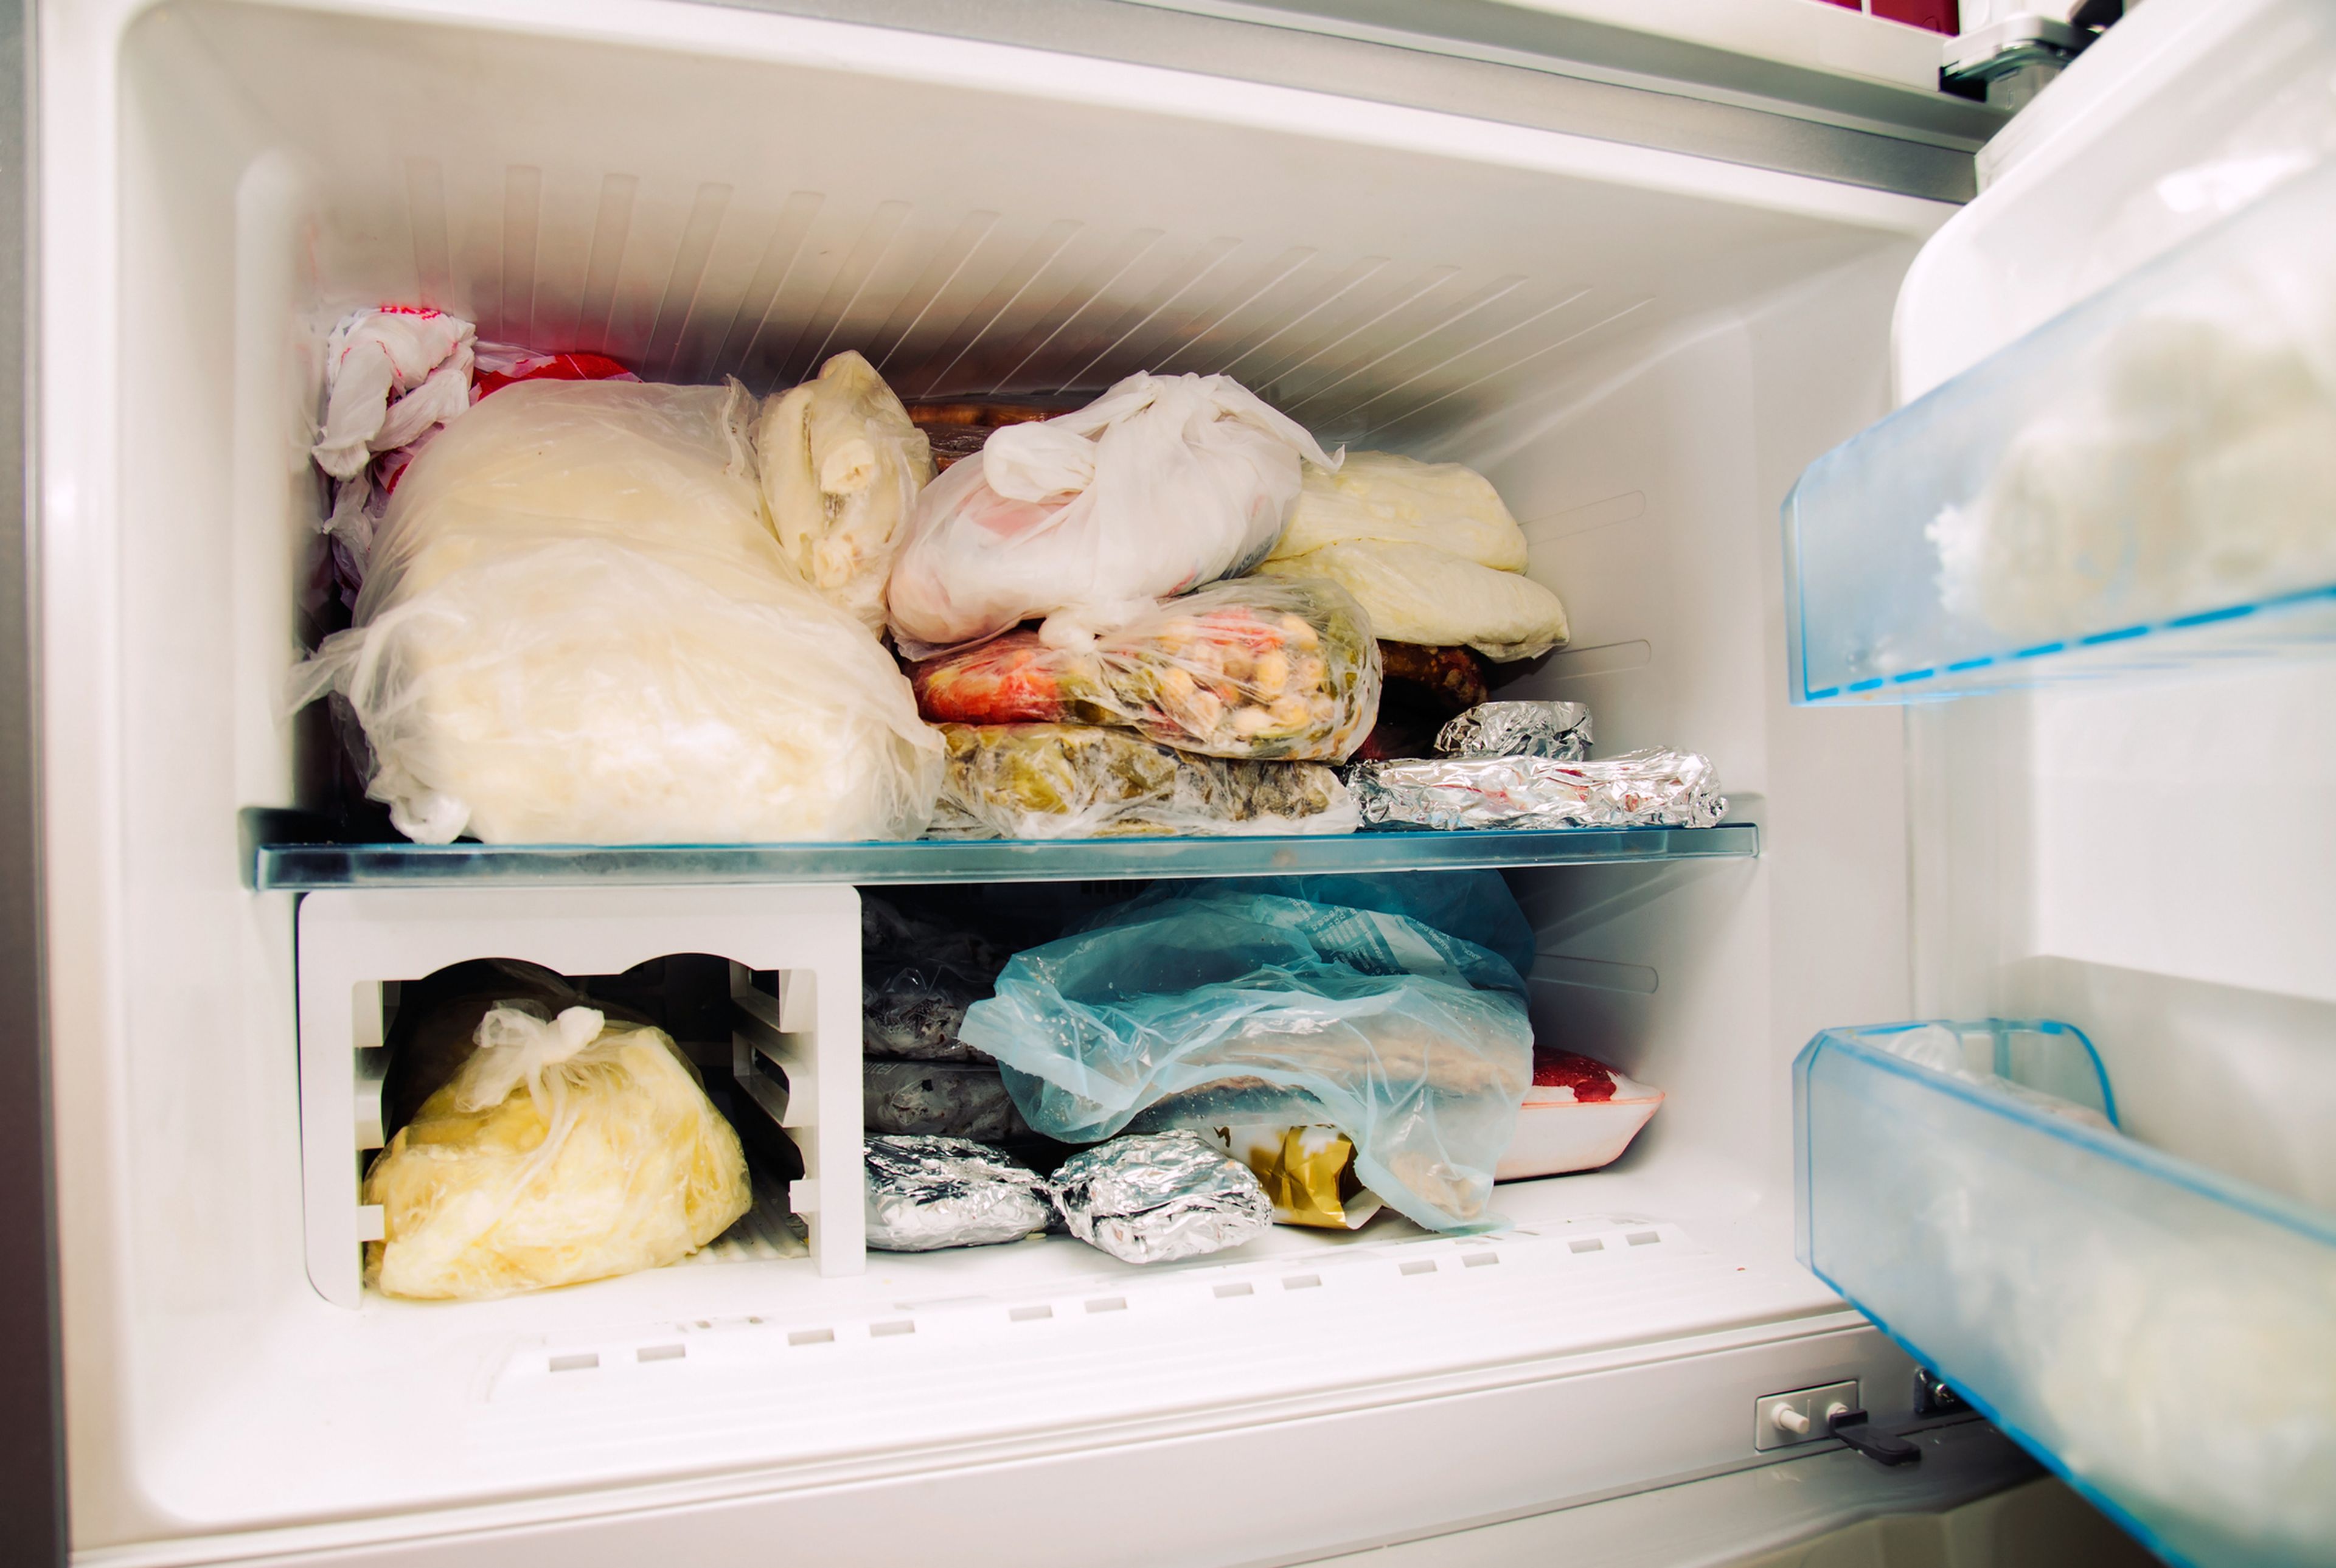 Заморозка в морозильной. Холодильник Freezer Refrigerator. Продукты в морозилке. Хранение в морозильнике. Морозильник с продуктами.